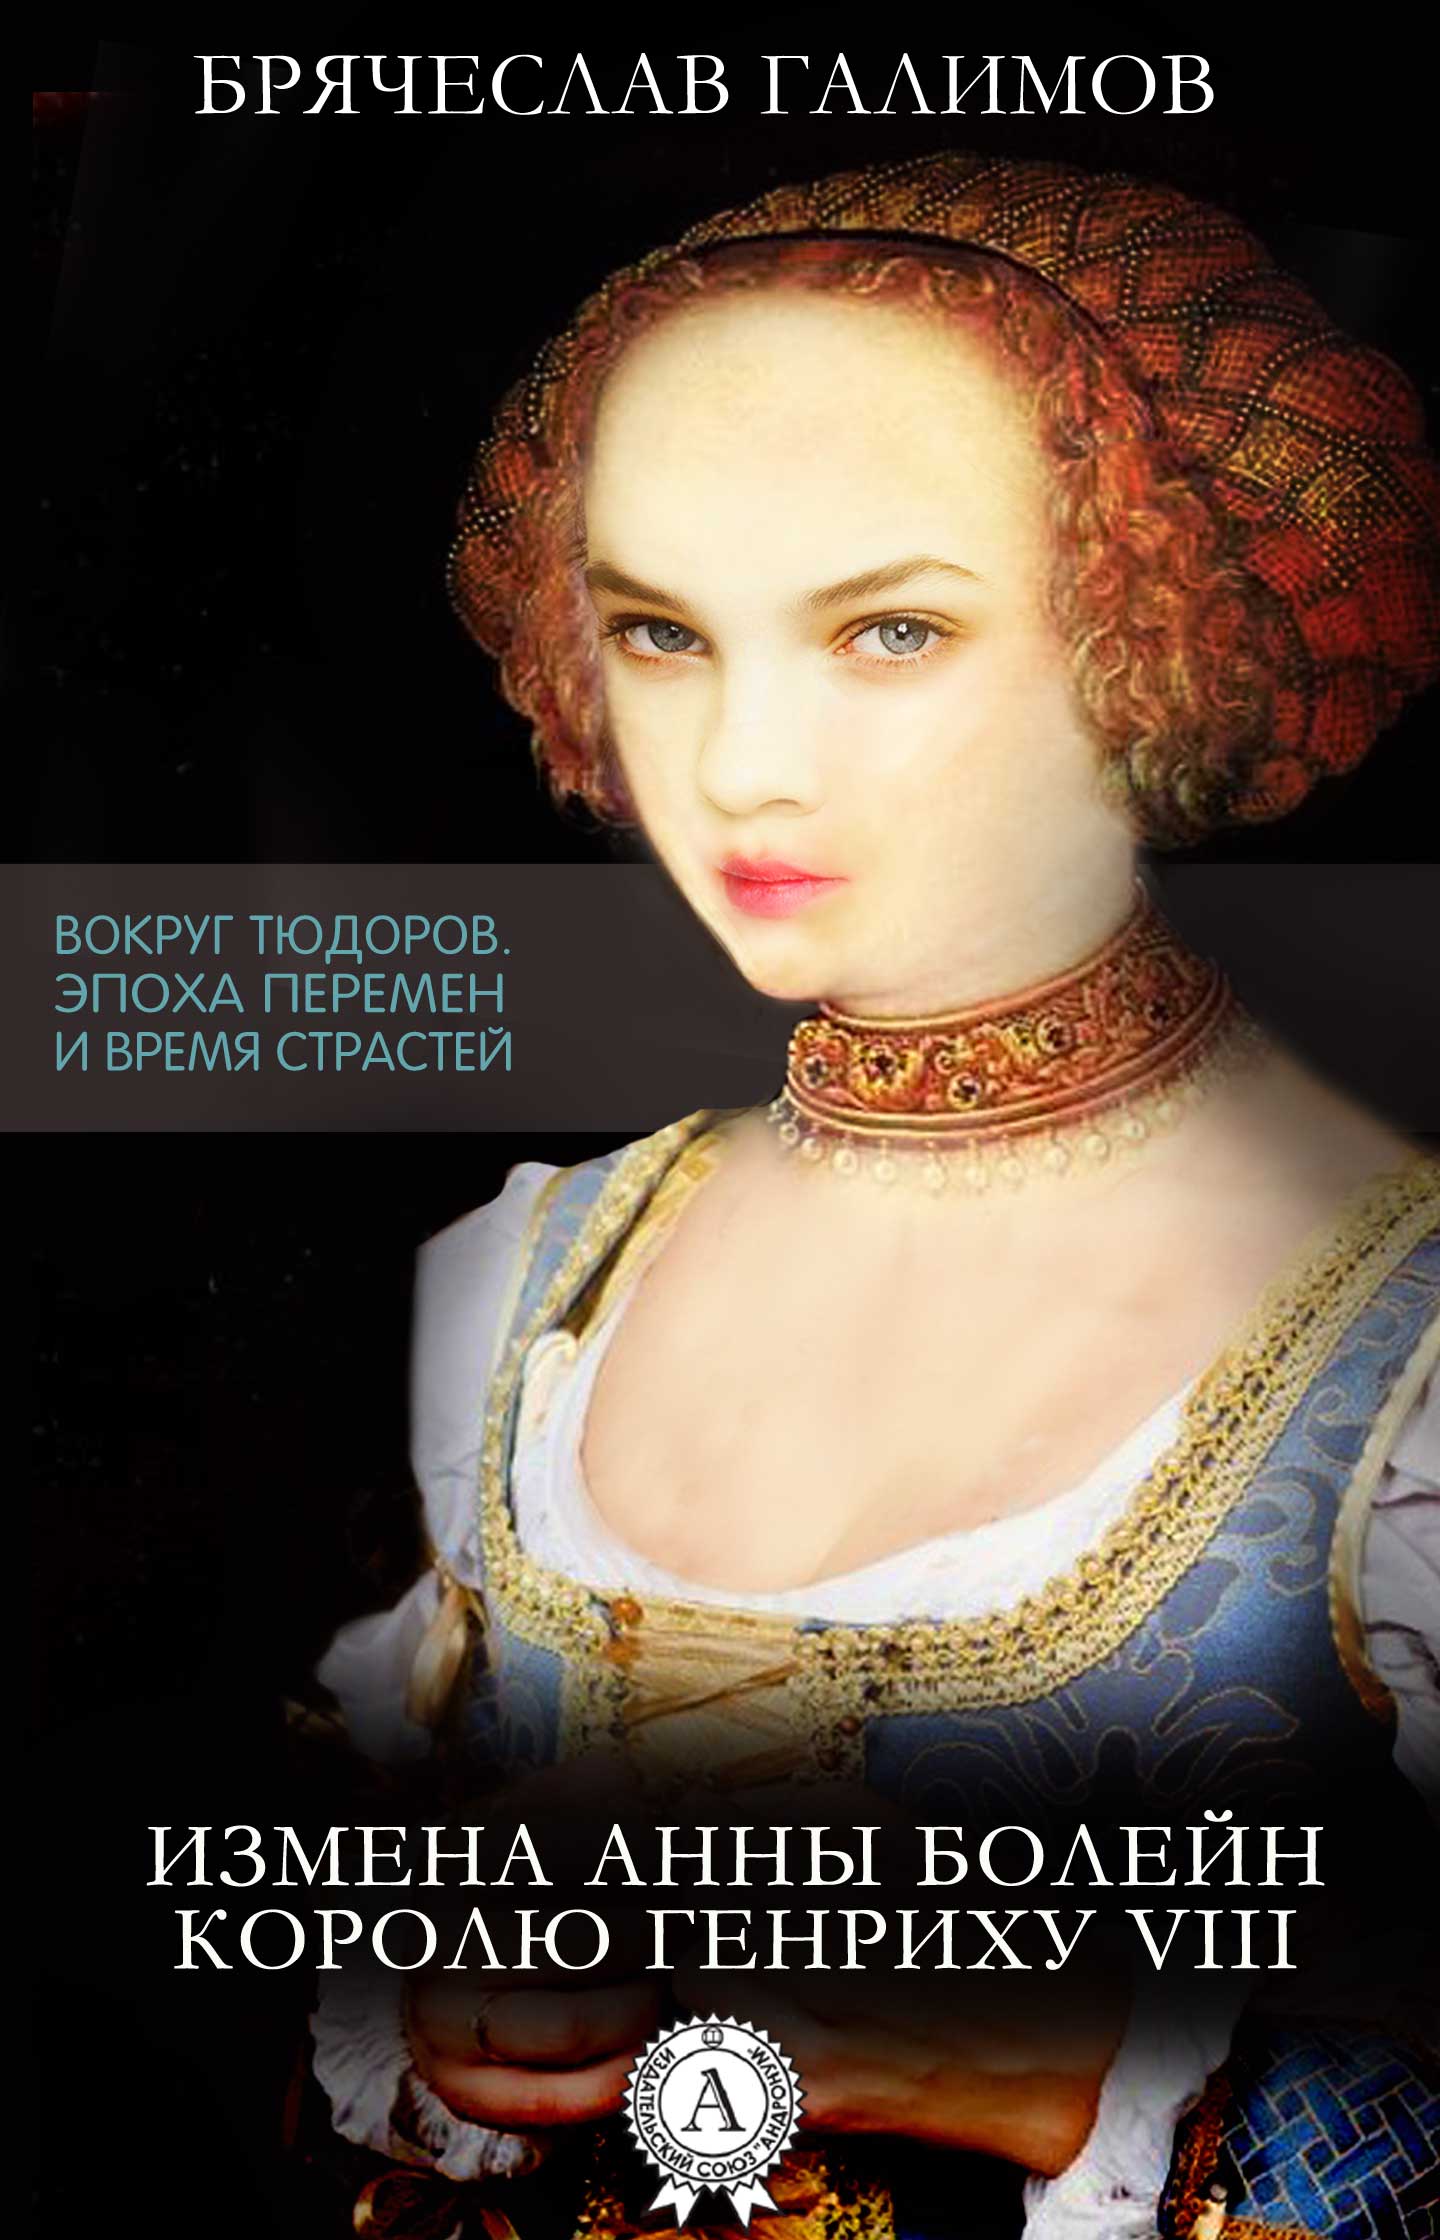 Брячеслав Галимов - Измена Анны Болейн королю Генриху VIII, скачать бесплатно книгу в формате fb2, doc, rtf, html, txt